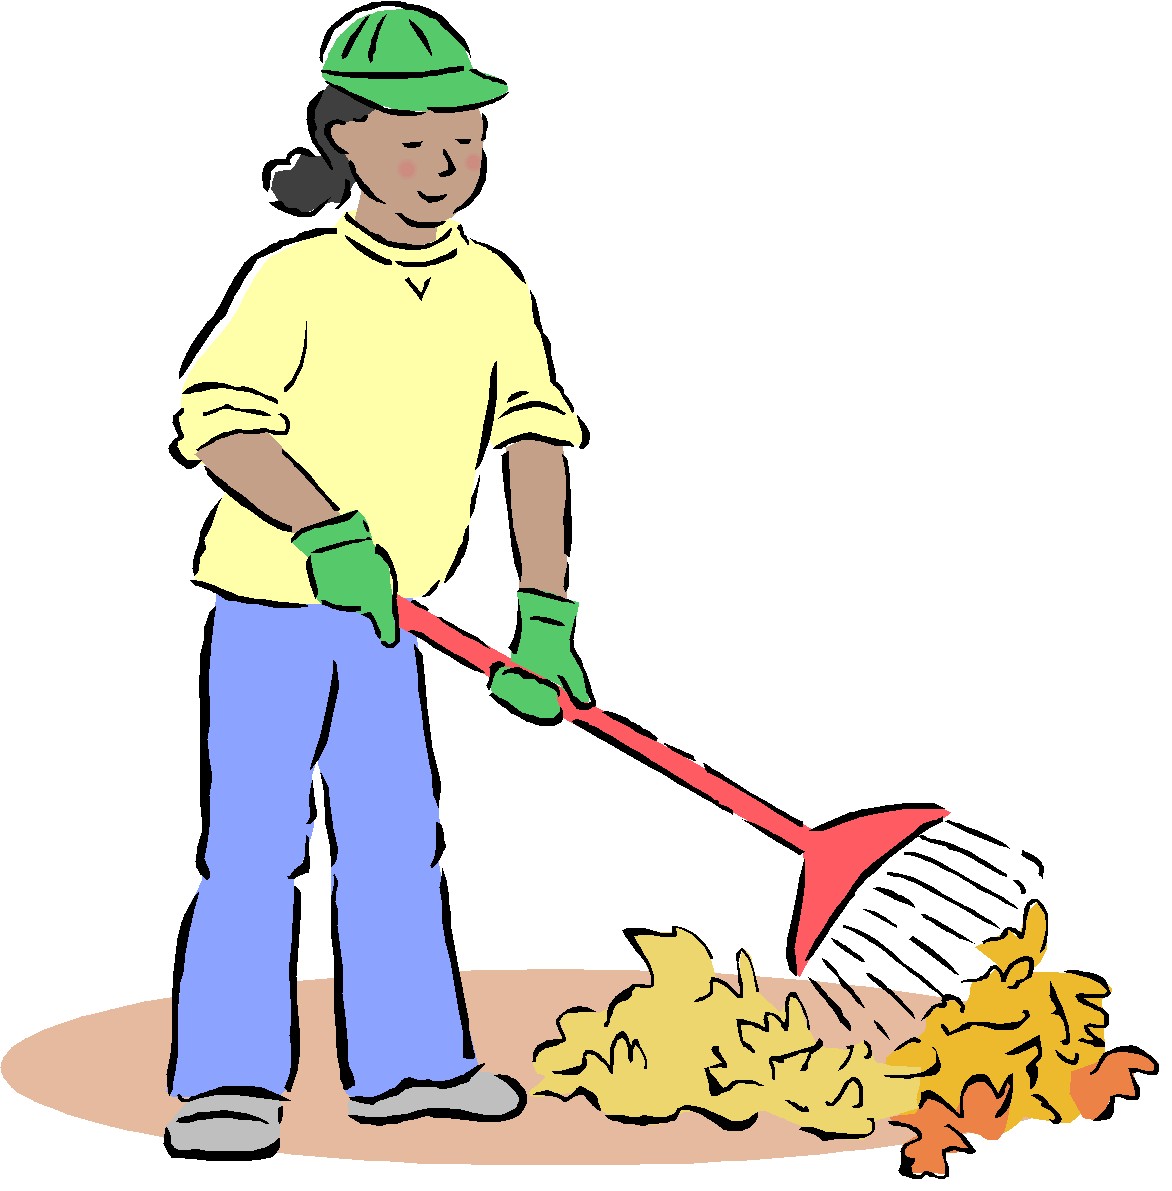 بحث عن النظافه ، بحث كامل عن النظافه جاهز بالتنسيق ، مقال عن النظافه